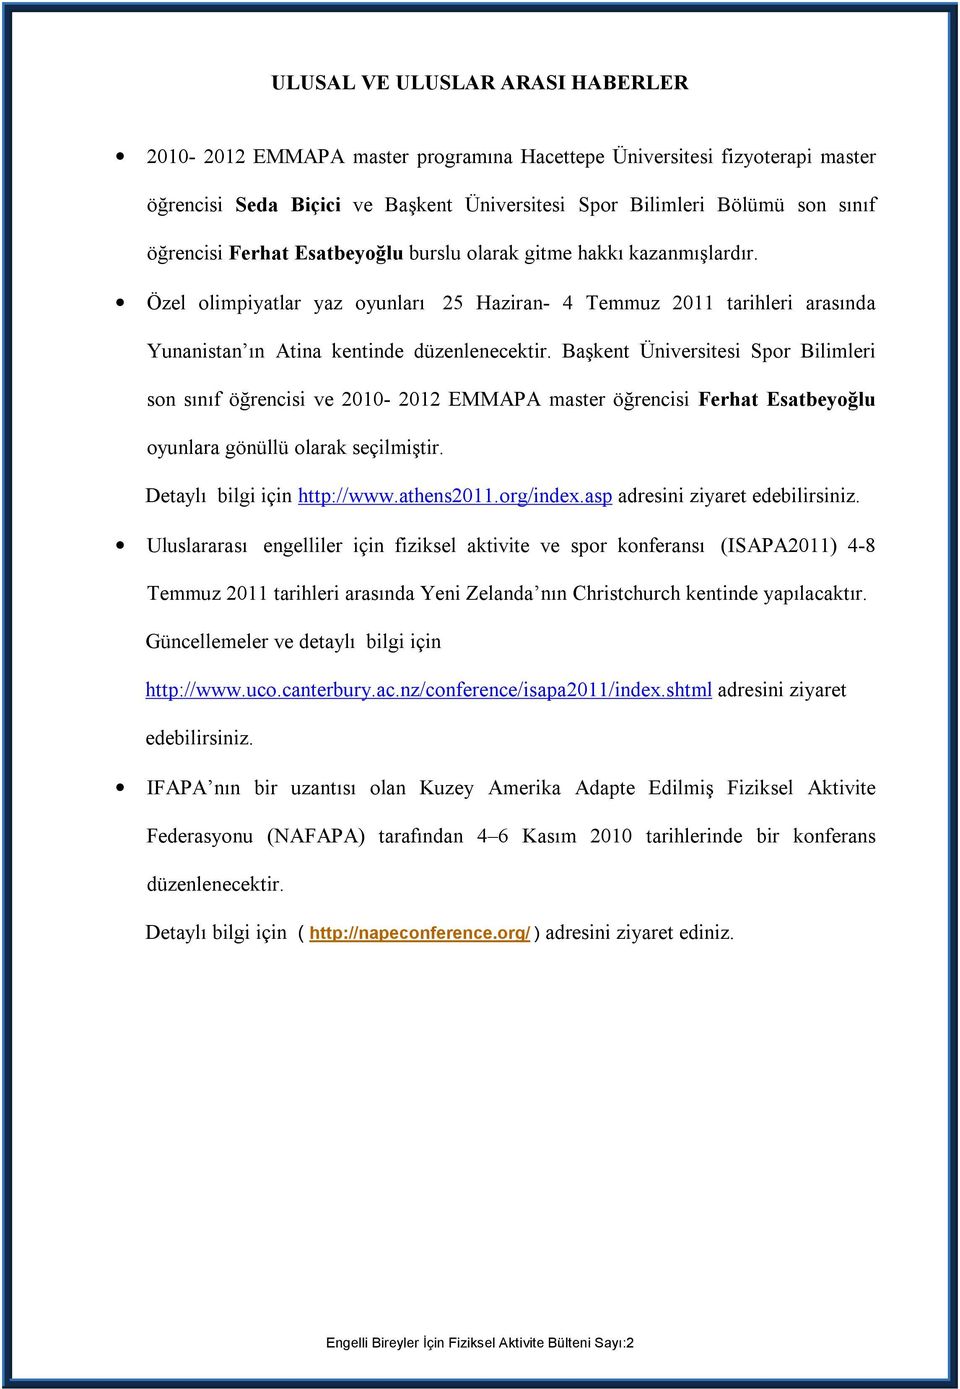 Başkent Üniversitesi Spor Bilimleri son sınıf öğrencisi ve 2010-2012 EMMAPA master öğrencisi Ferhat Esatbeyoğlu oyunlara gönüllü olarak seçilmiştir. Detaylı bilgi için http://www.athens2011.org/index.